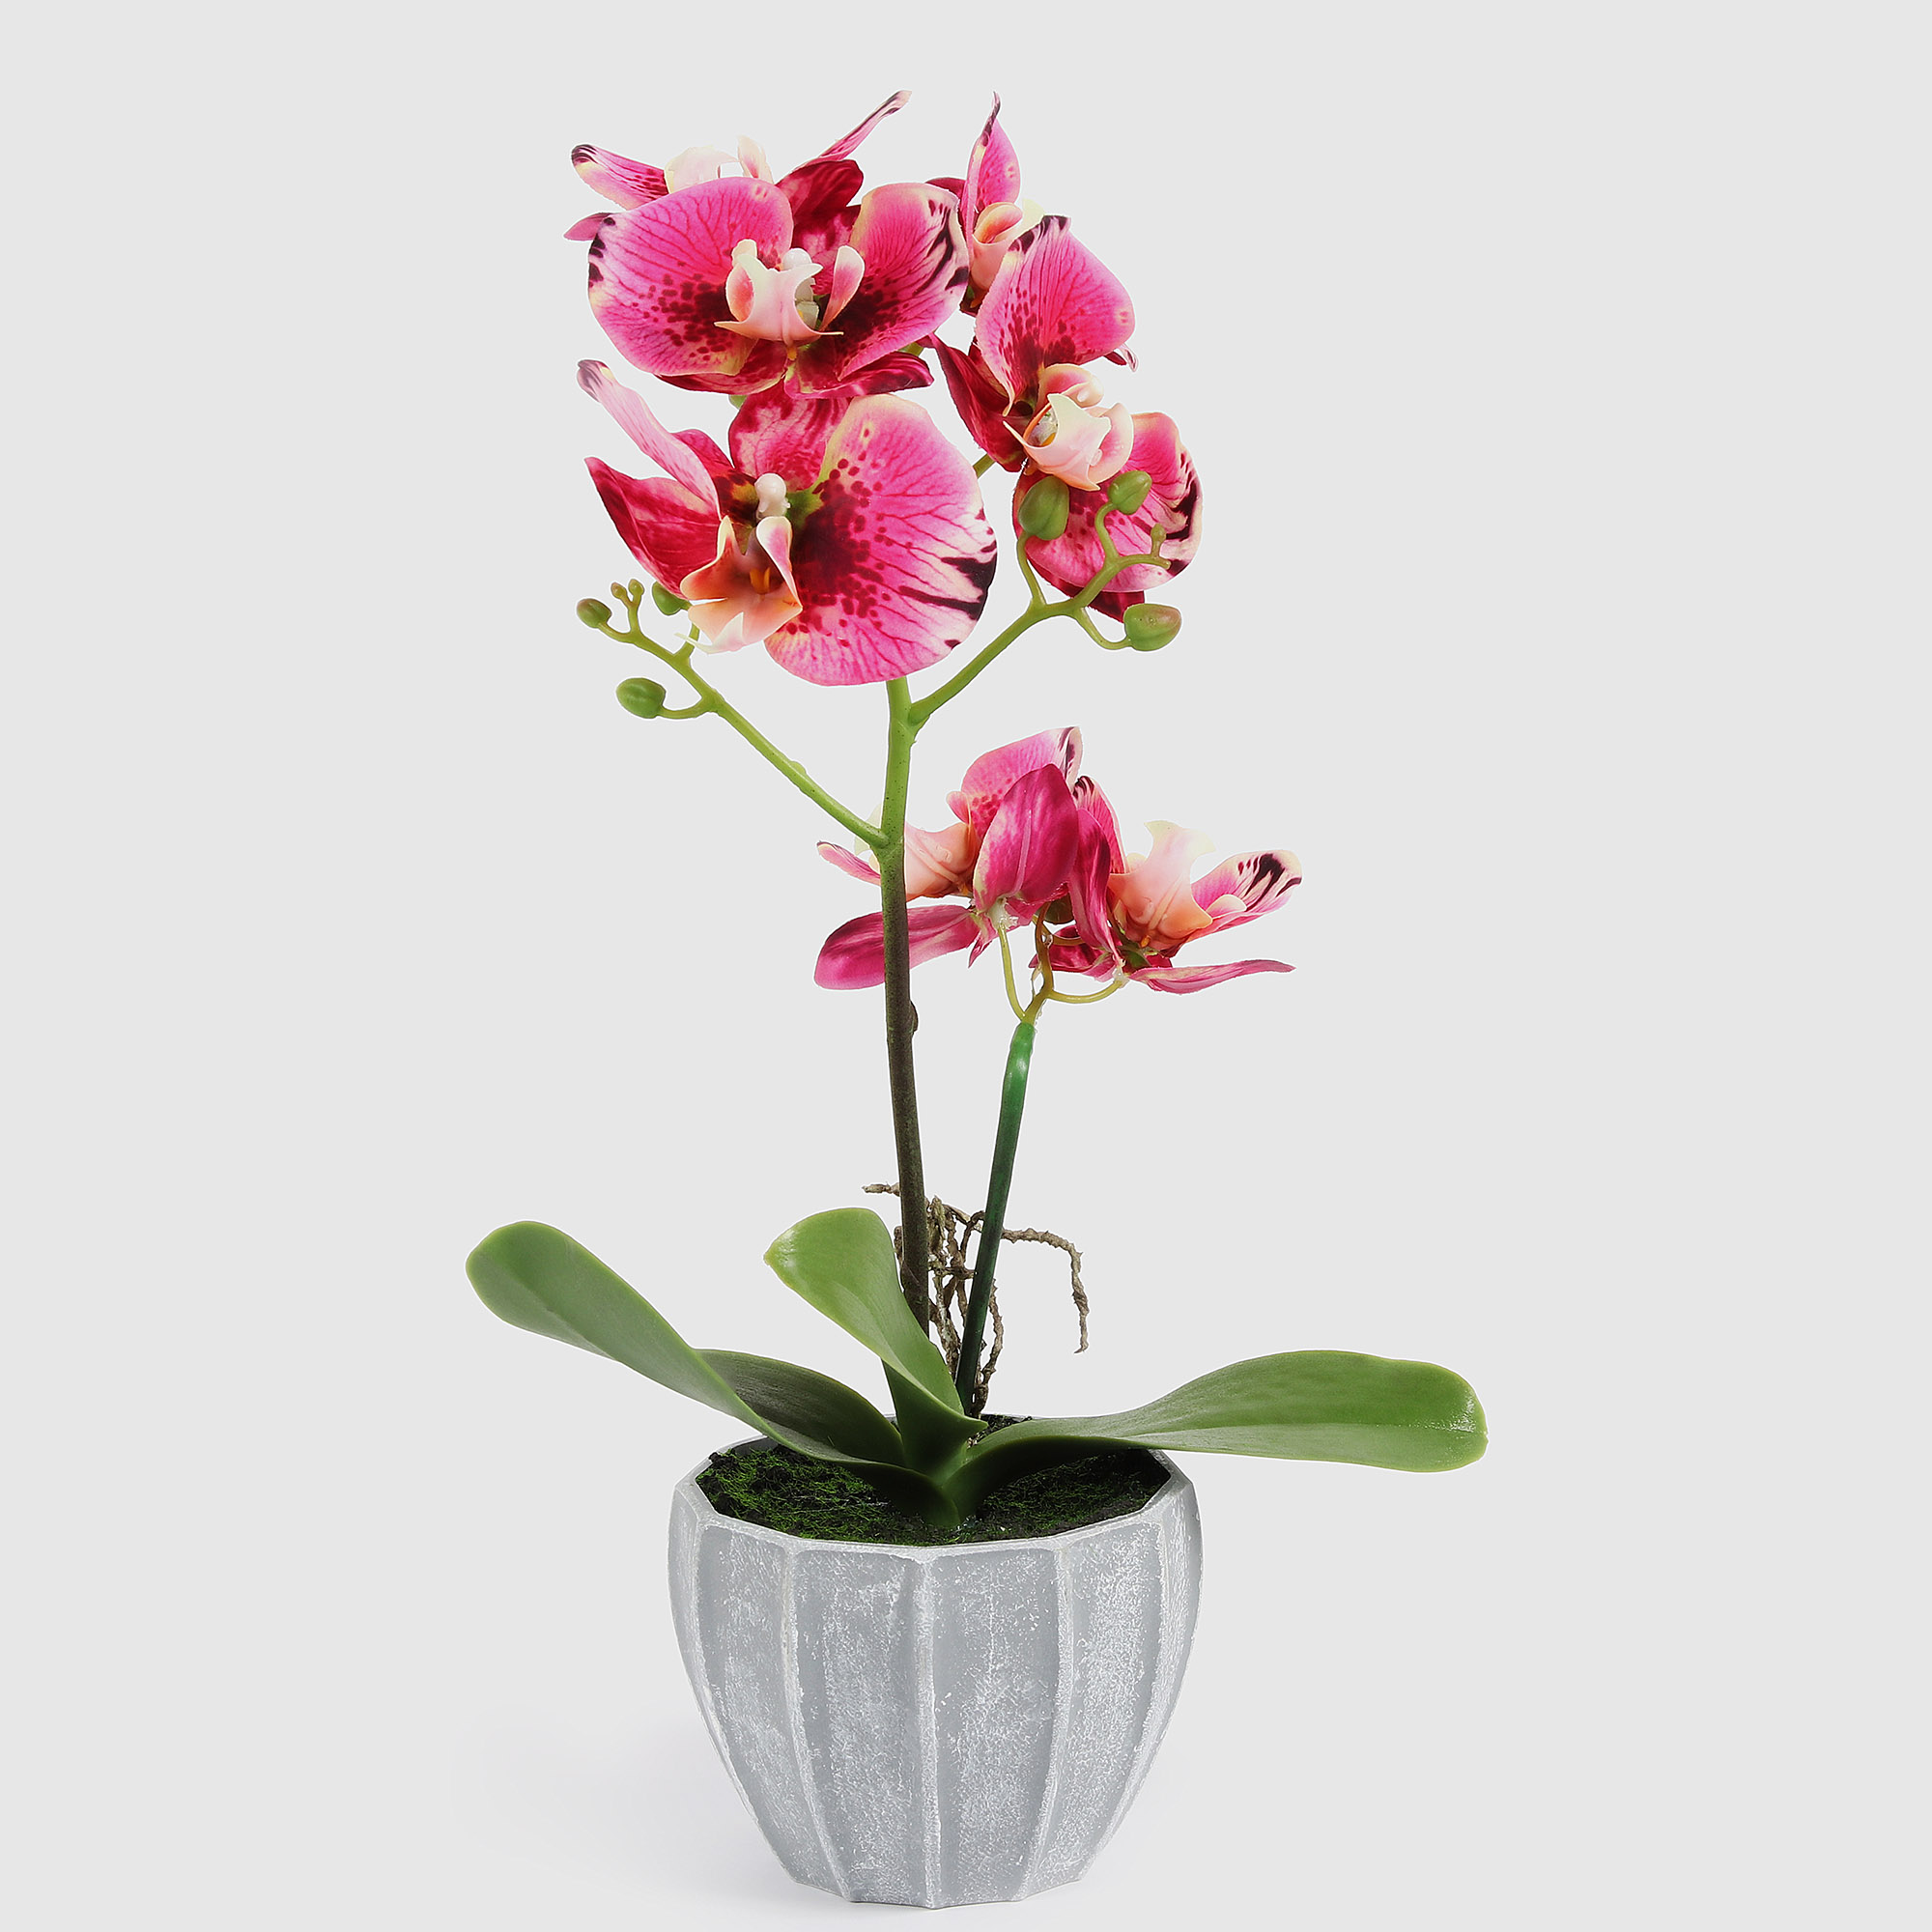 Цветок искусственный Fuzhou Light в горшке орхидея тигровая 2 цвета, 40 см цветок искусственный орхидея в горшке 2 цвета 54 см